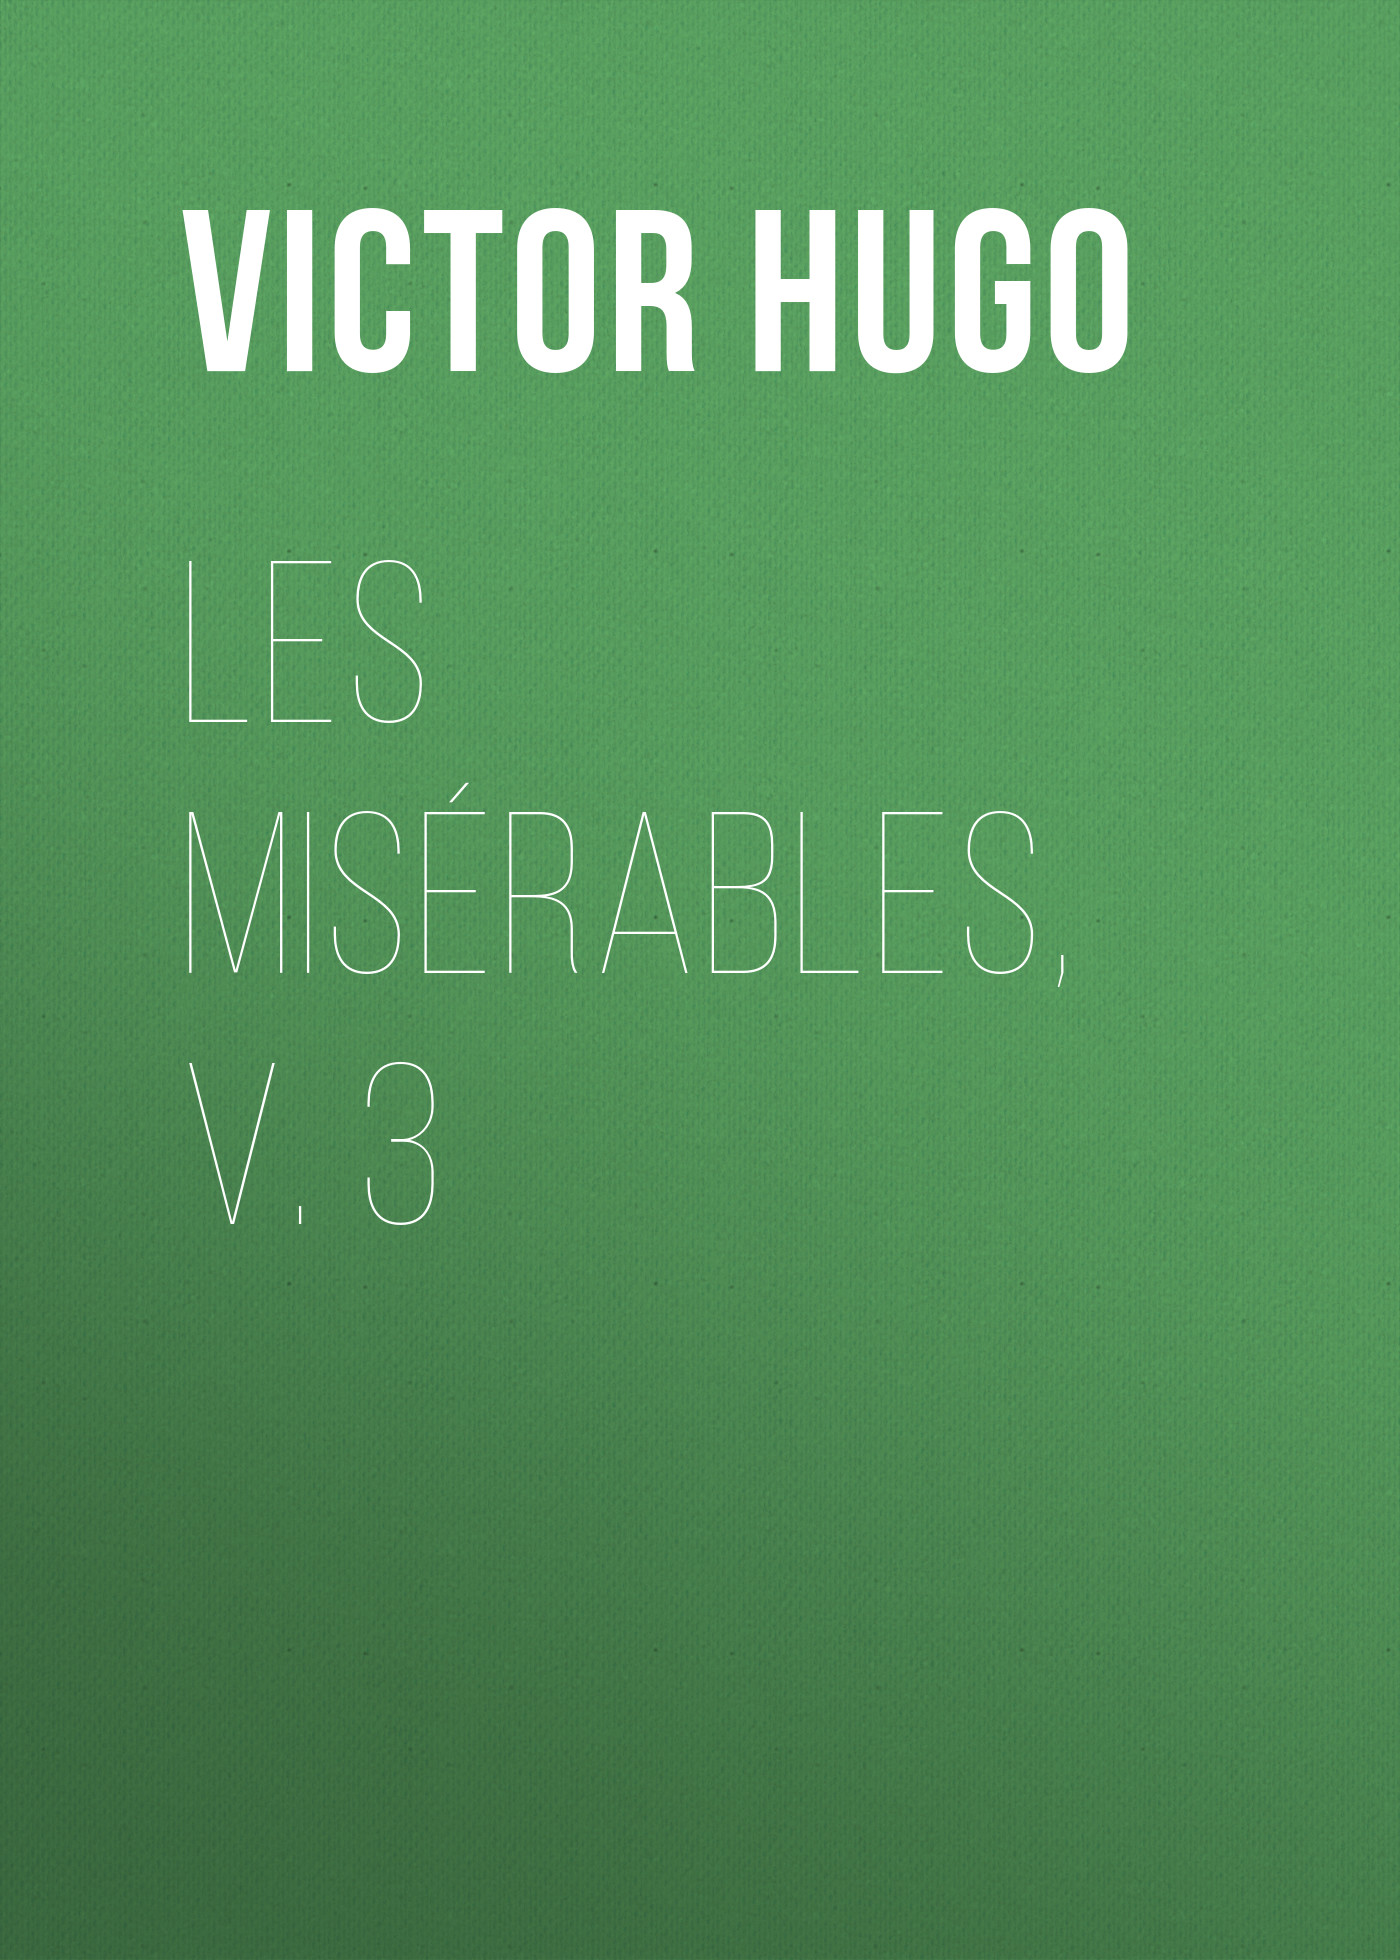 Книга Les Misérables, v. 3 из серии , созданная Victor Hugo, может относится к жанру Литература 19 века, Зарубежная старинная литература, Зарубежная классика. Стоимость электронной книги Les Misérables, v. 3 с идентификатором 25230348 составляет 0 руб.